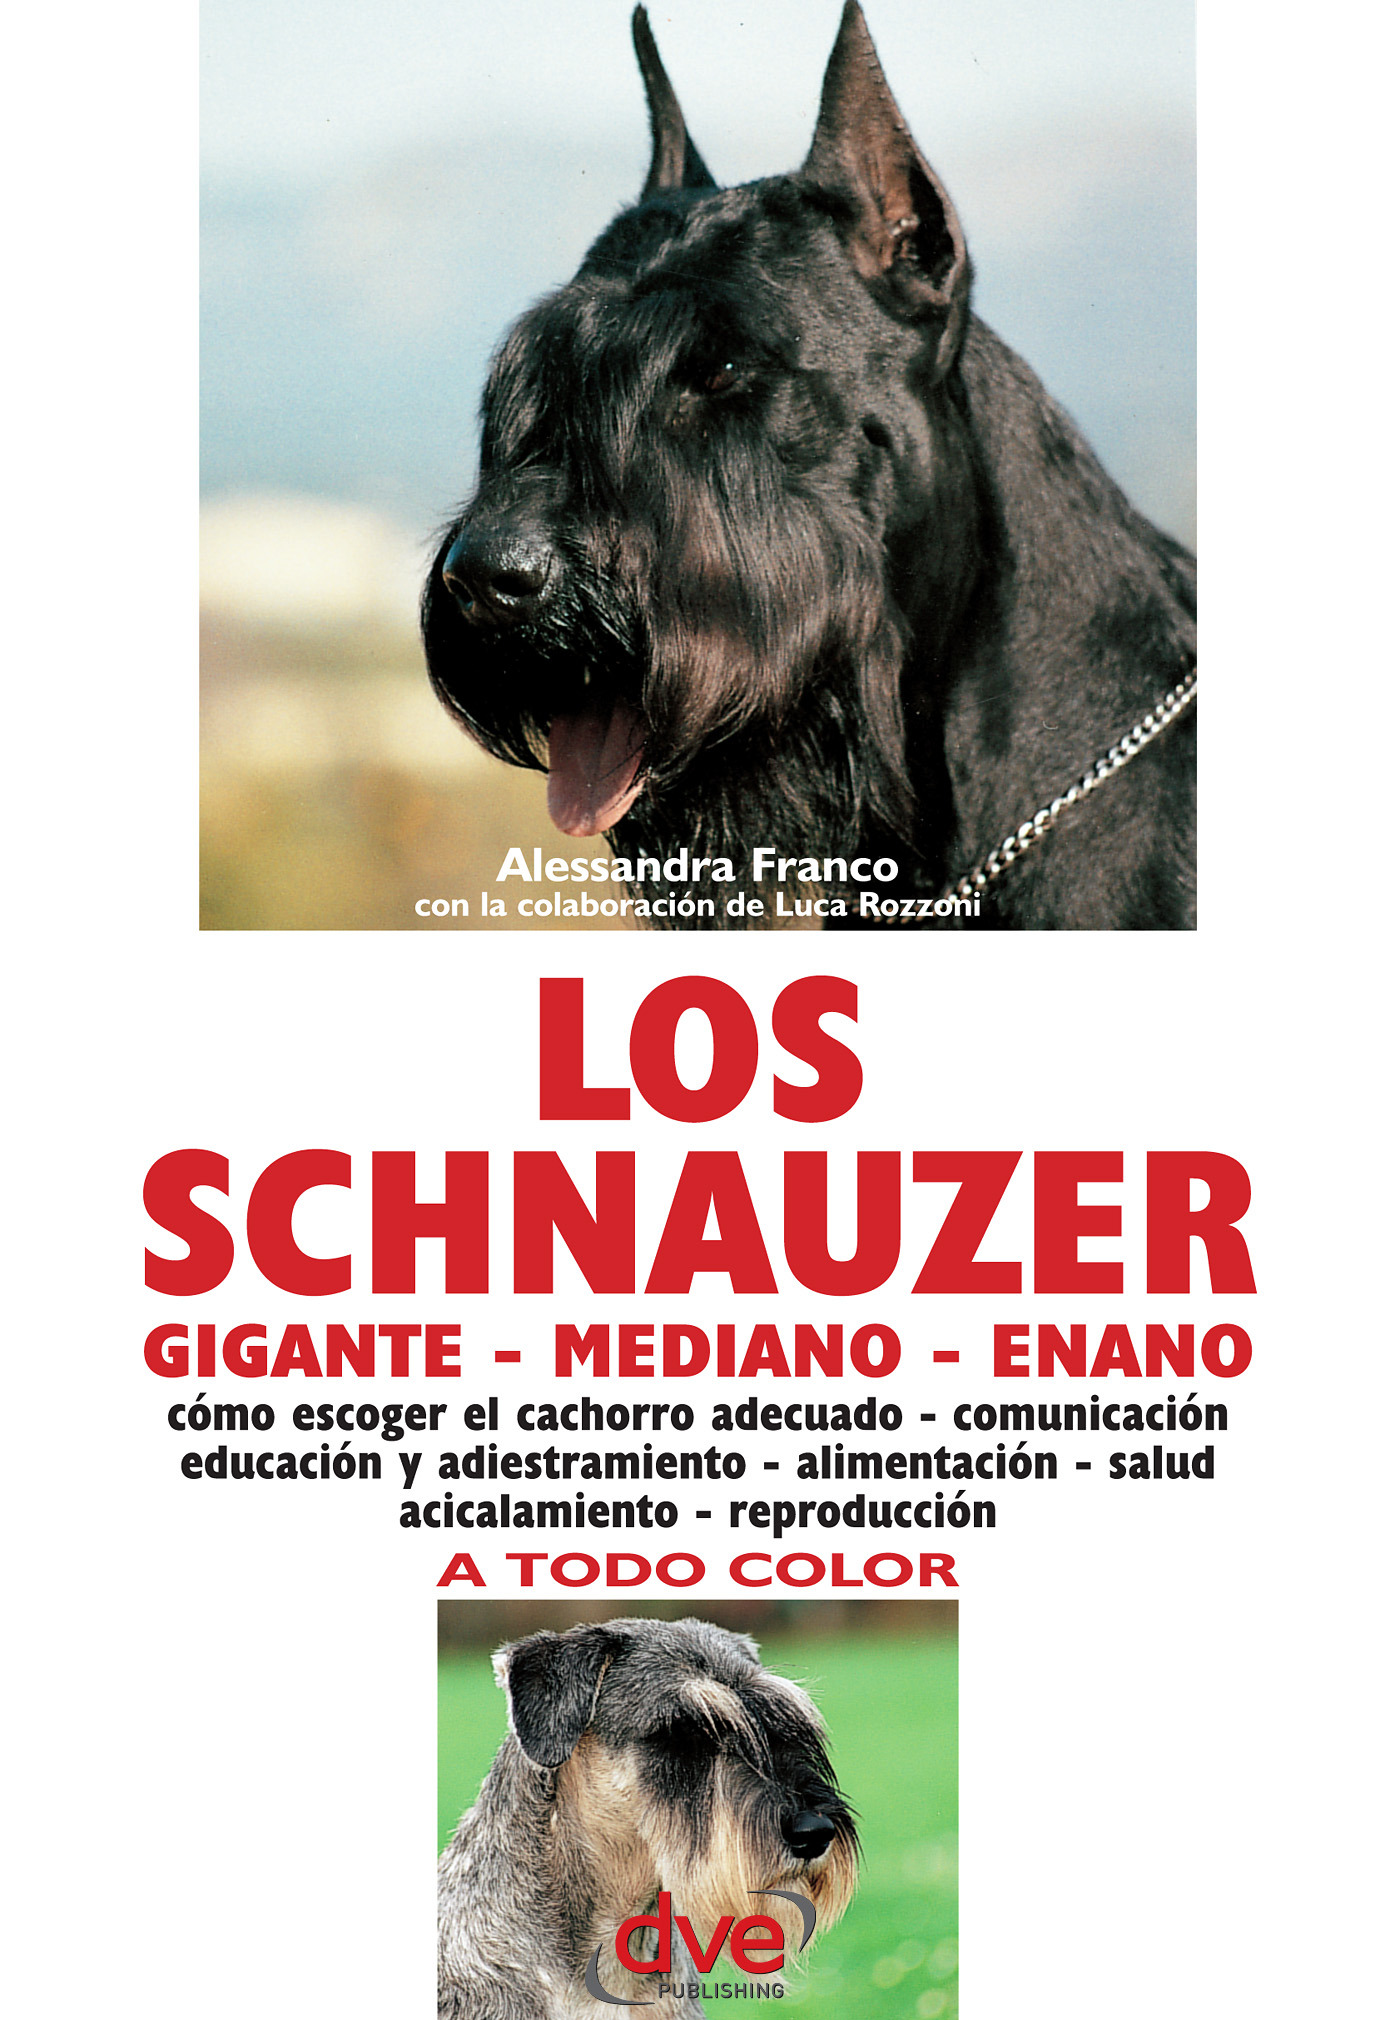 Franco, Alessandra - Los schnauzer: cómo escoger el cachorro adecuado - comunicación educación y adiestramiento - alimentación - salud acicalamiento - reproducción, e-bok